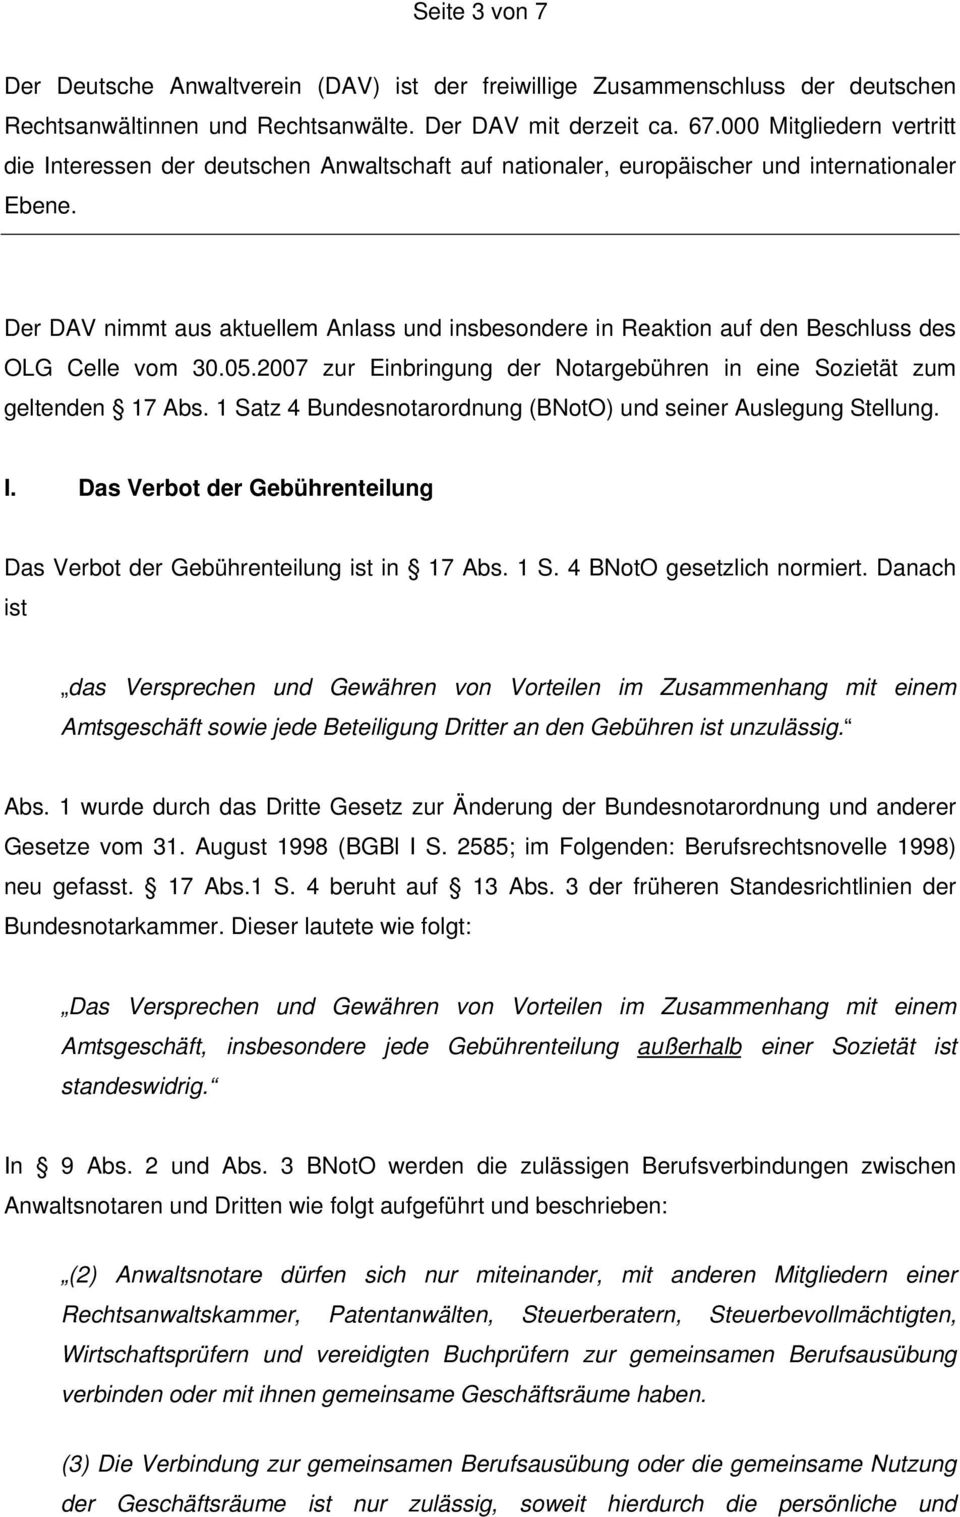 Der DAV nimmt aus aktuellem Anlass und insbesondere in Reaktion auf den Beschluss des OLG Celle vom 30.05.2007 zur Einbringung der Notargebühren in eine Sozietät zum geltenden 17 Abs.